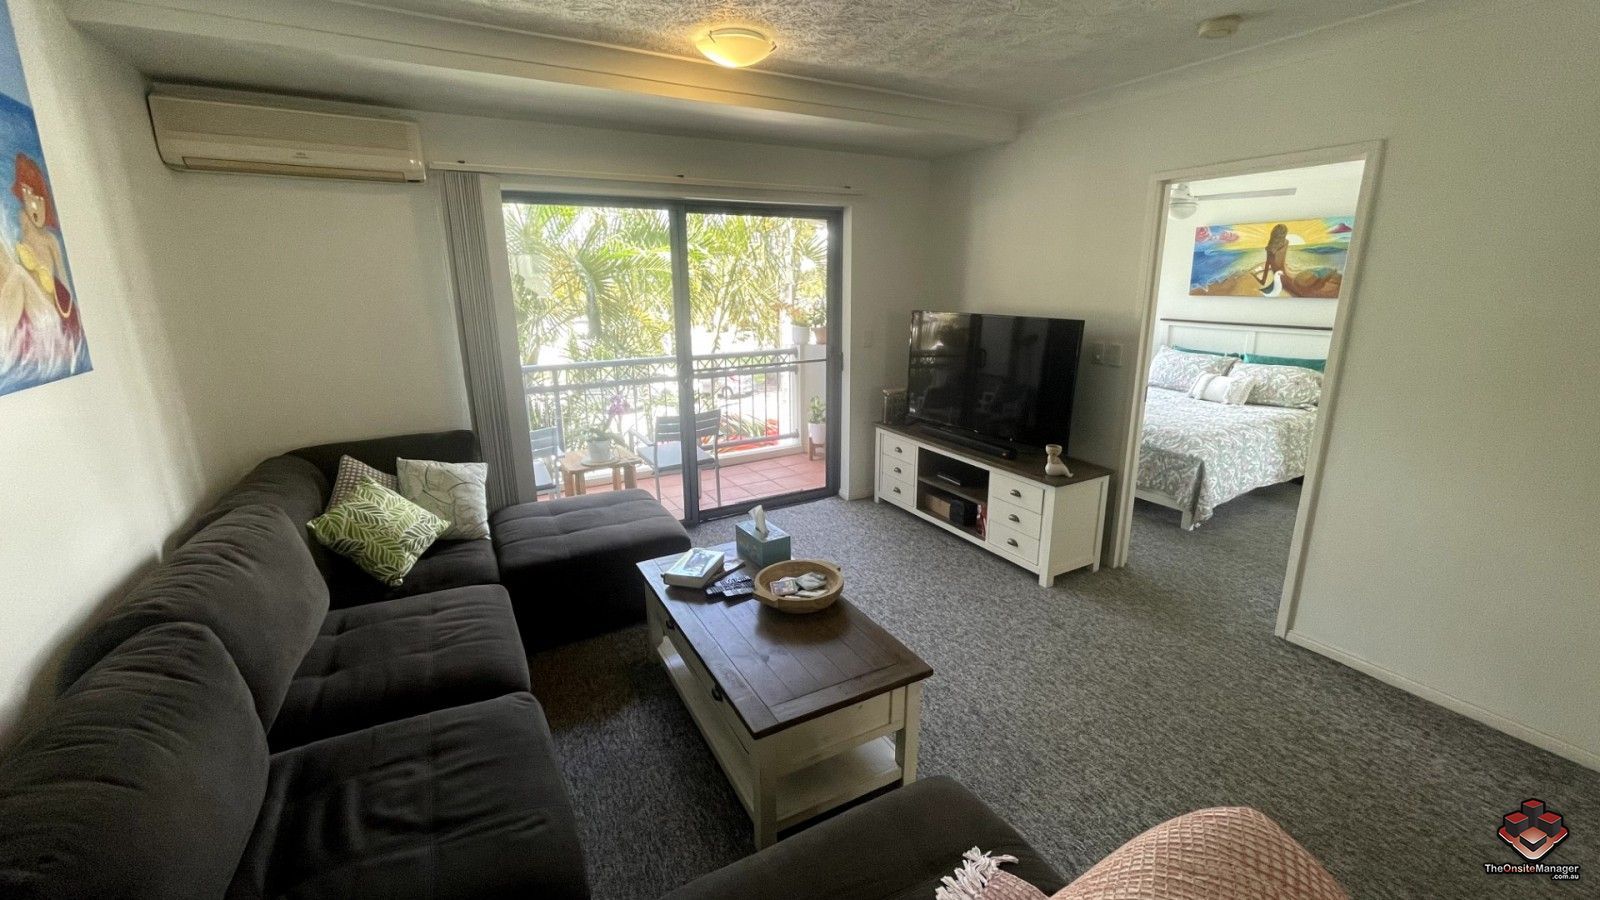 2 bedrooms Apartment / Unit / Flat in ID:21125459/5 Hill Street COOLANGATTA QLD, 4225